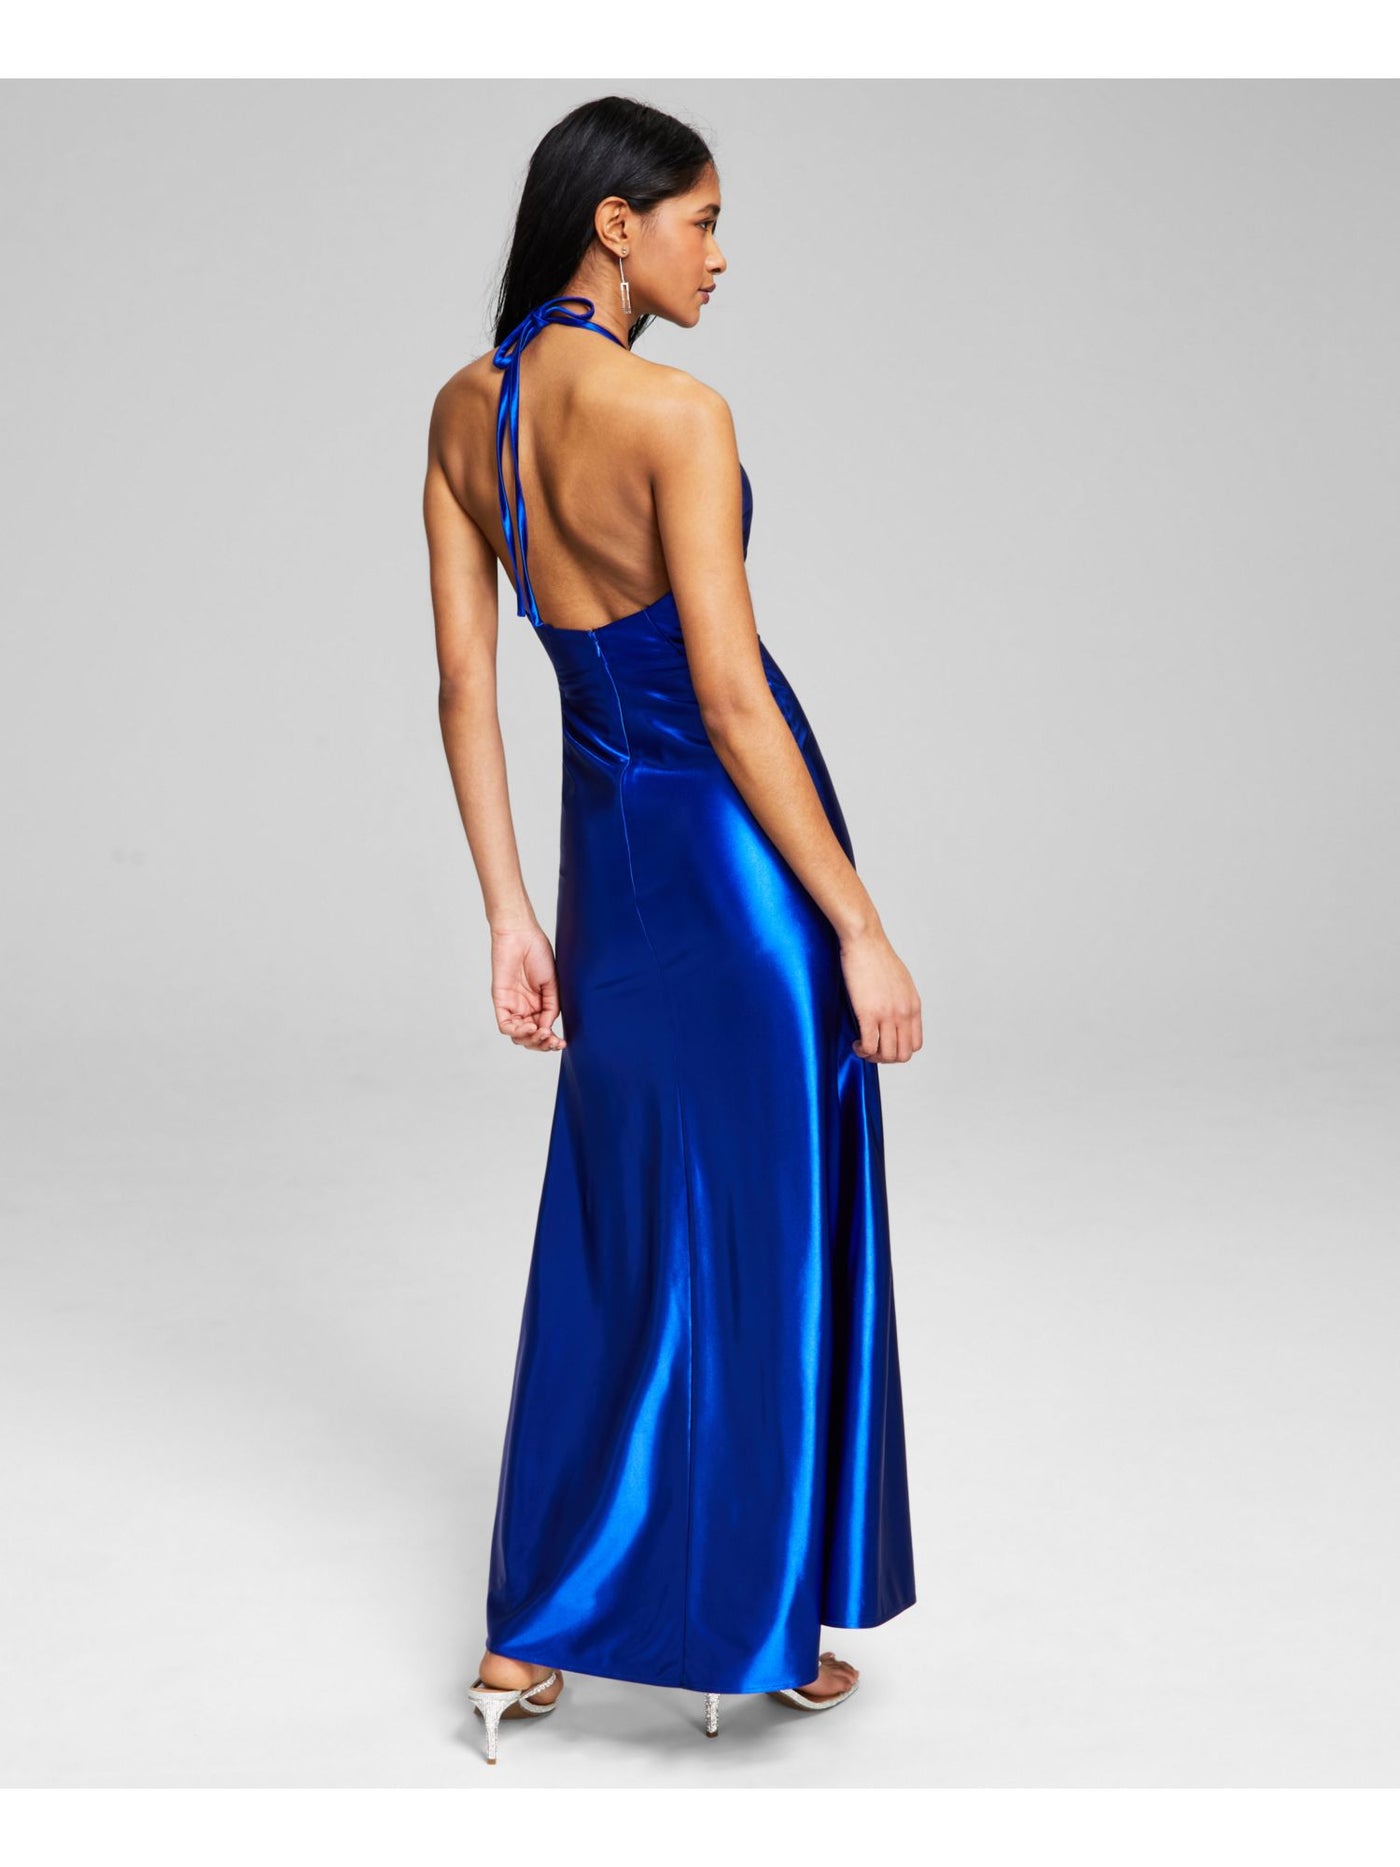 BLONDIE Womens Blue Slitted Zippered Sleeveless V Neck Full-Length Evening Gown Dress Juniors 9